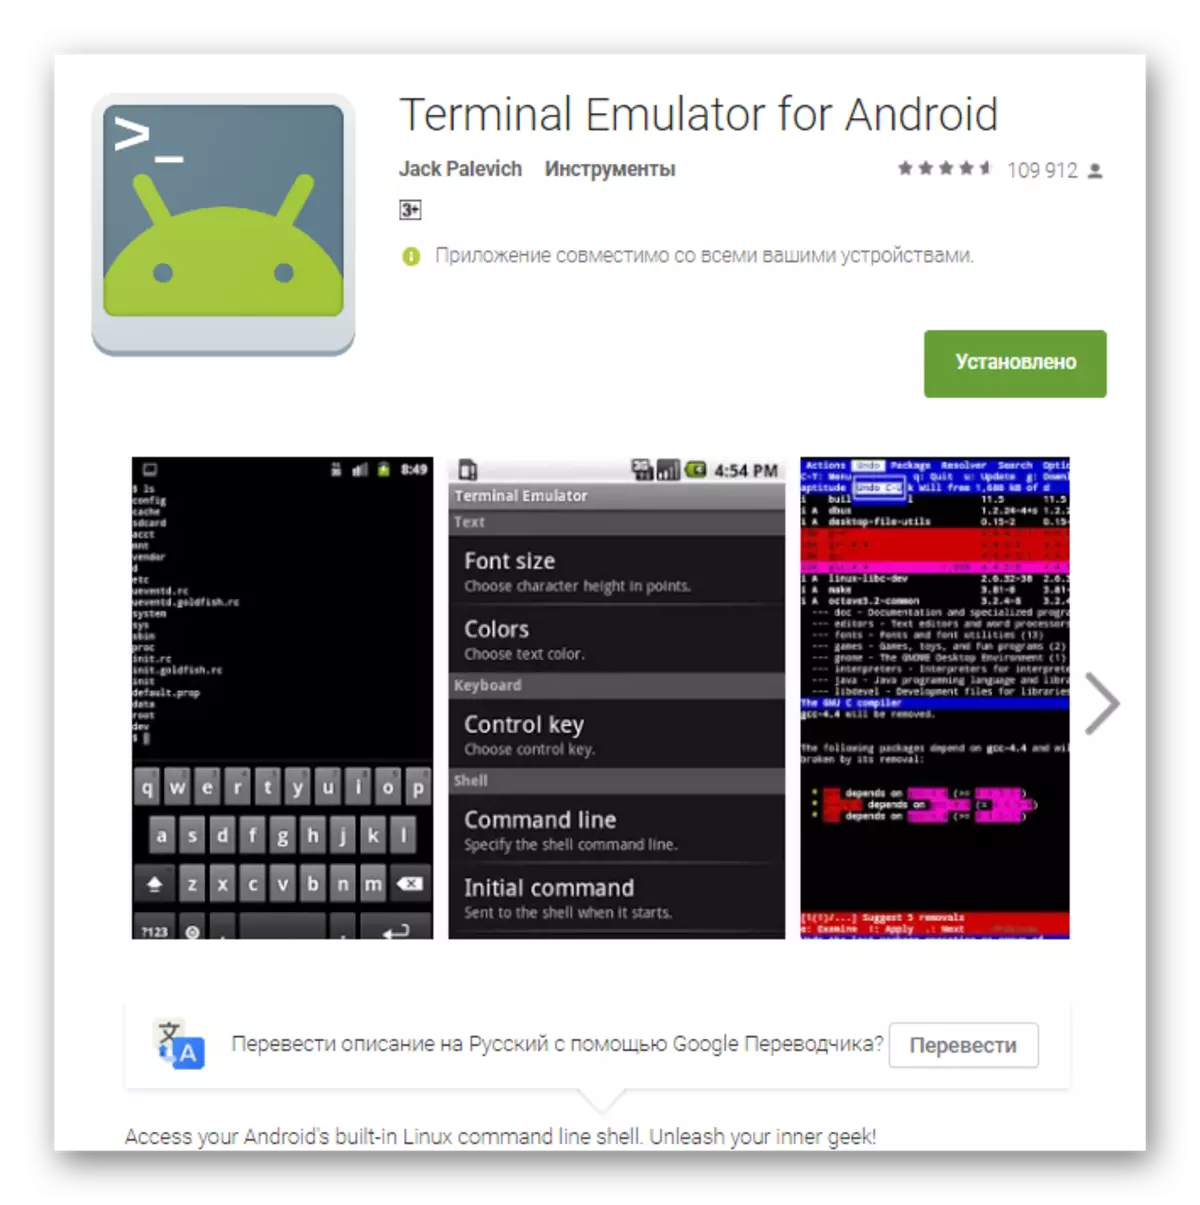 Emulador de terminal para Android en el mercado de placas.